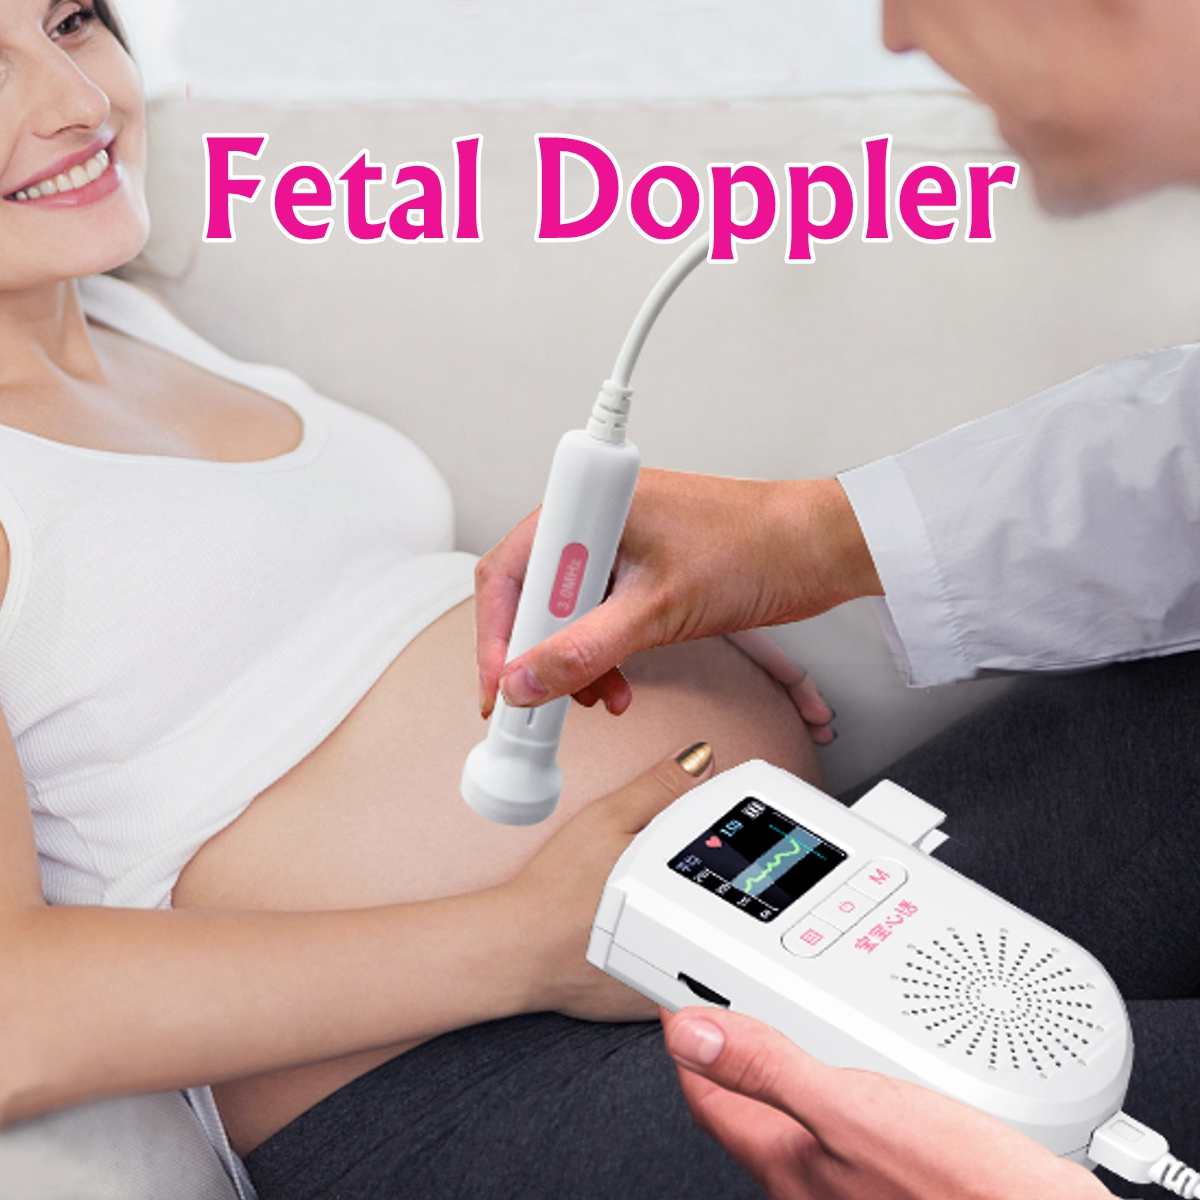 Fetal Doppler Fetal listen baby monitor right test medical no radiation pregnant women household quickened stethoscope